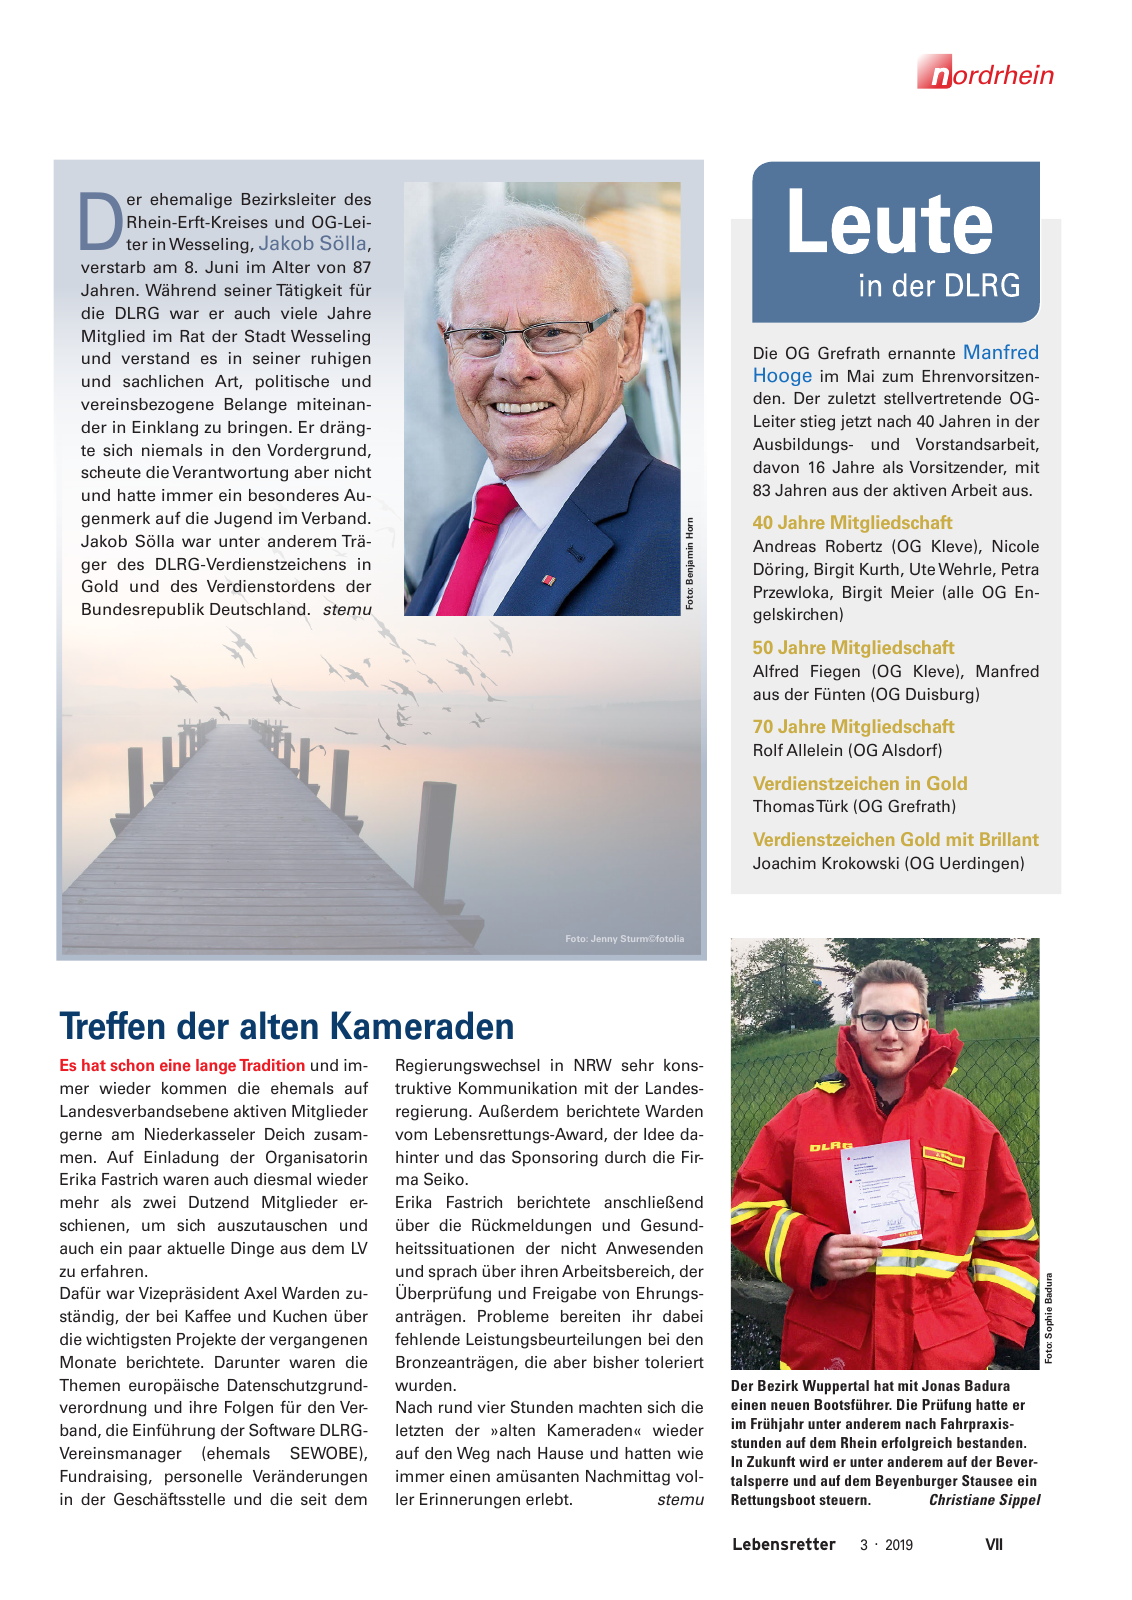 Vorschau Lebensretter 3/2019 - Nordrhein Regionalausgabe Seite 9